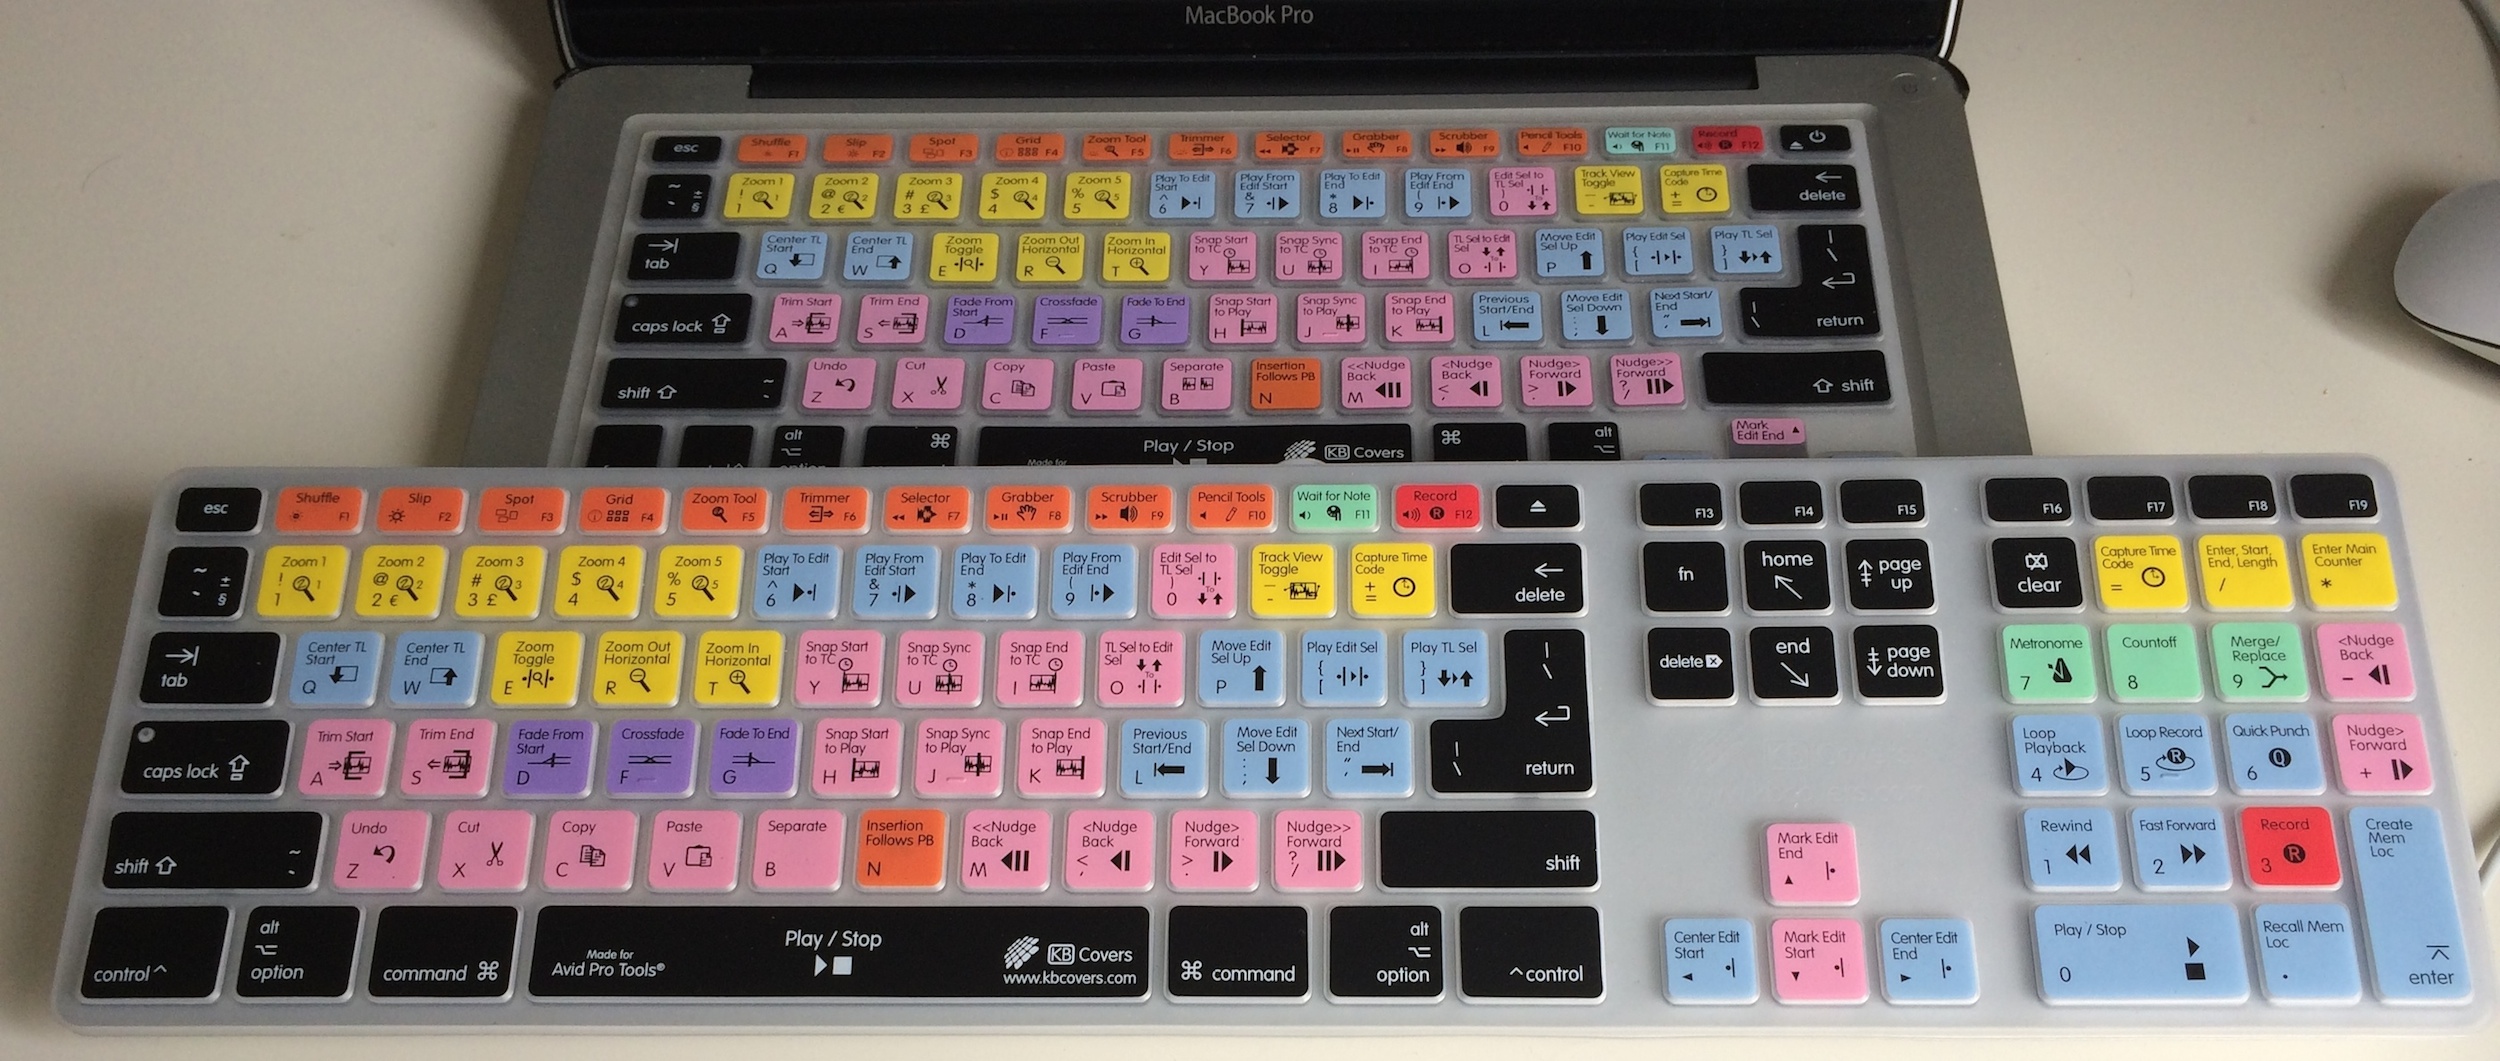 pro tools keyboard overlay